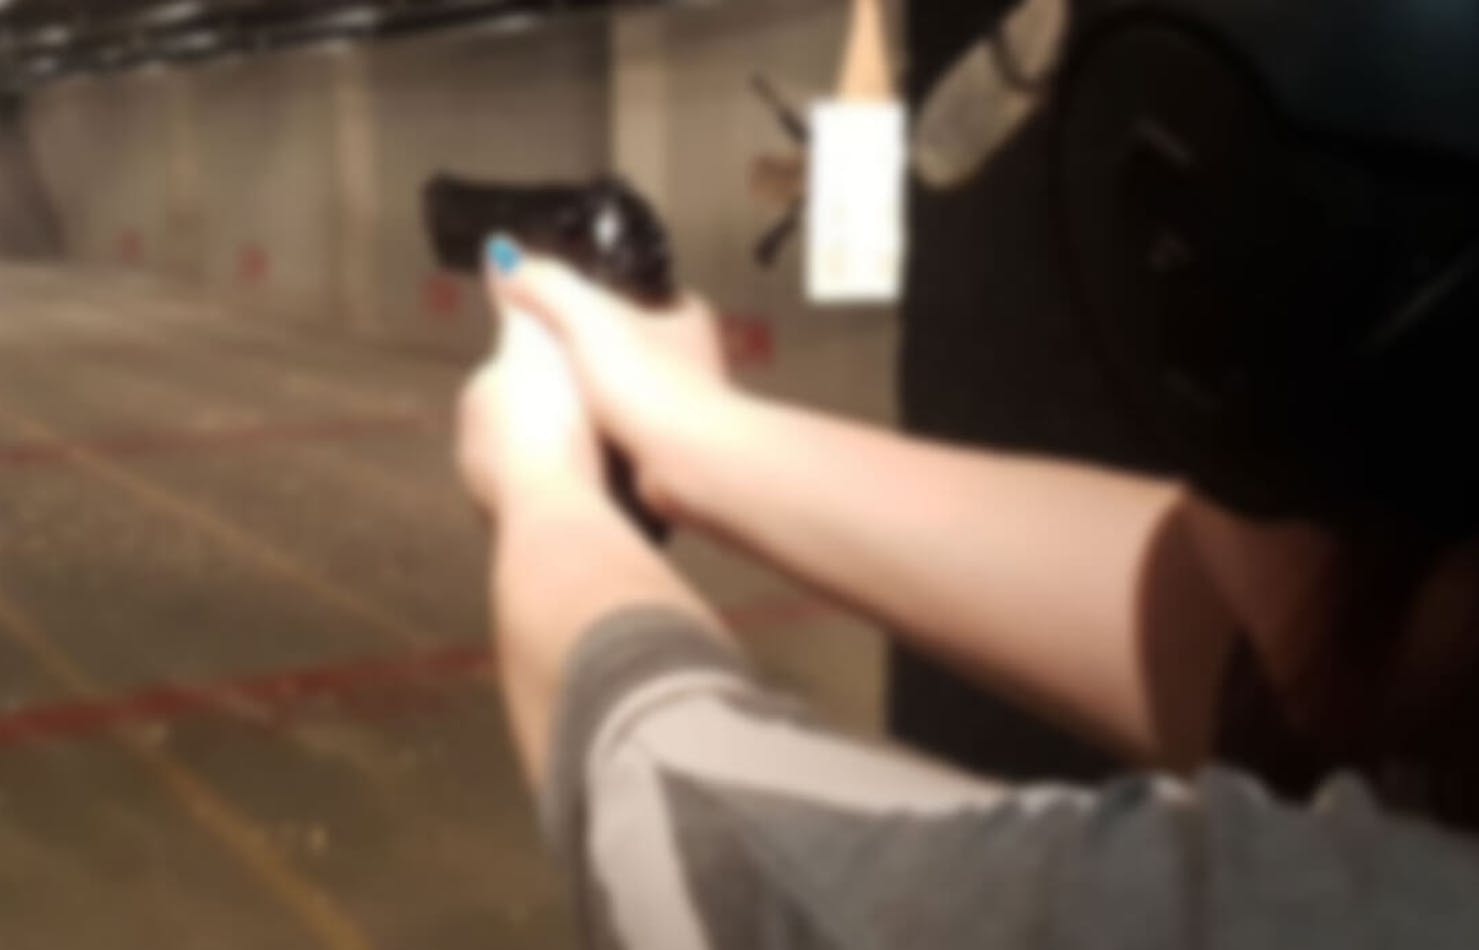 Pistol shooting at range